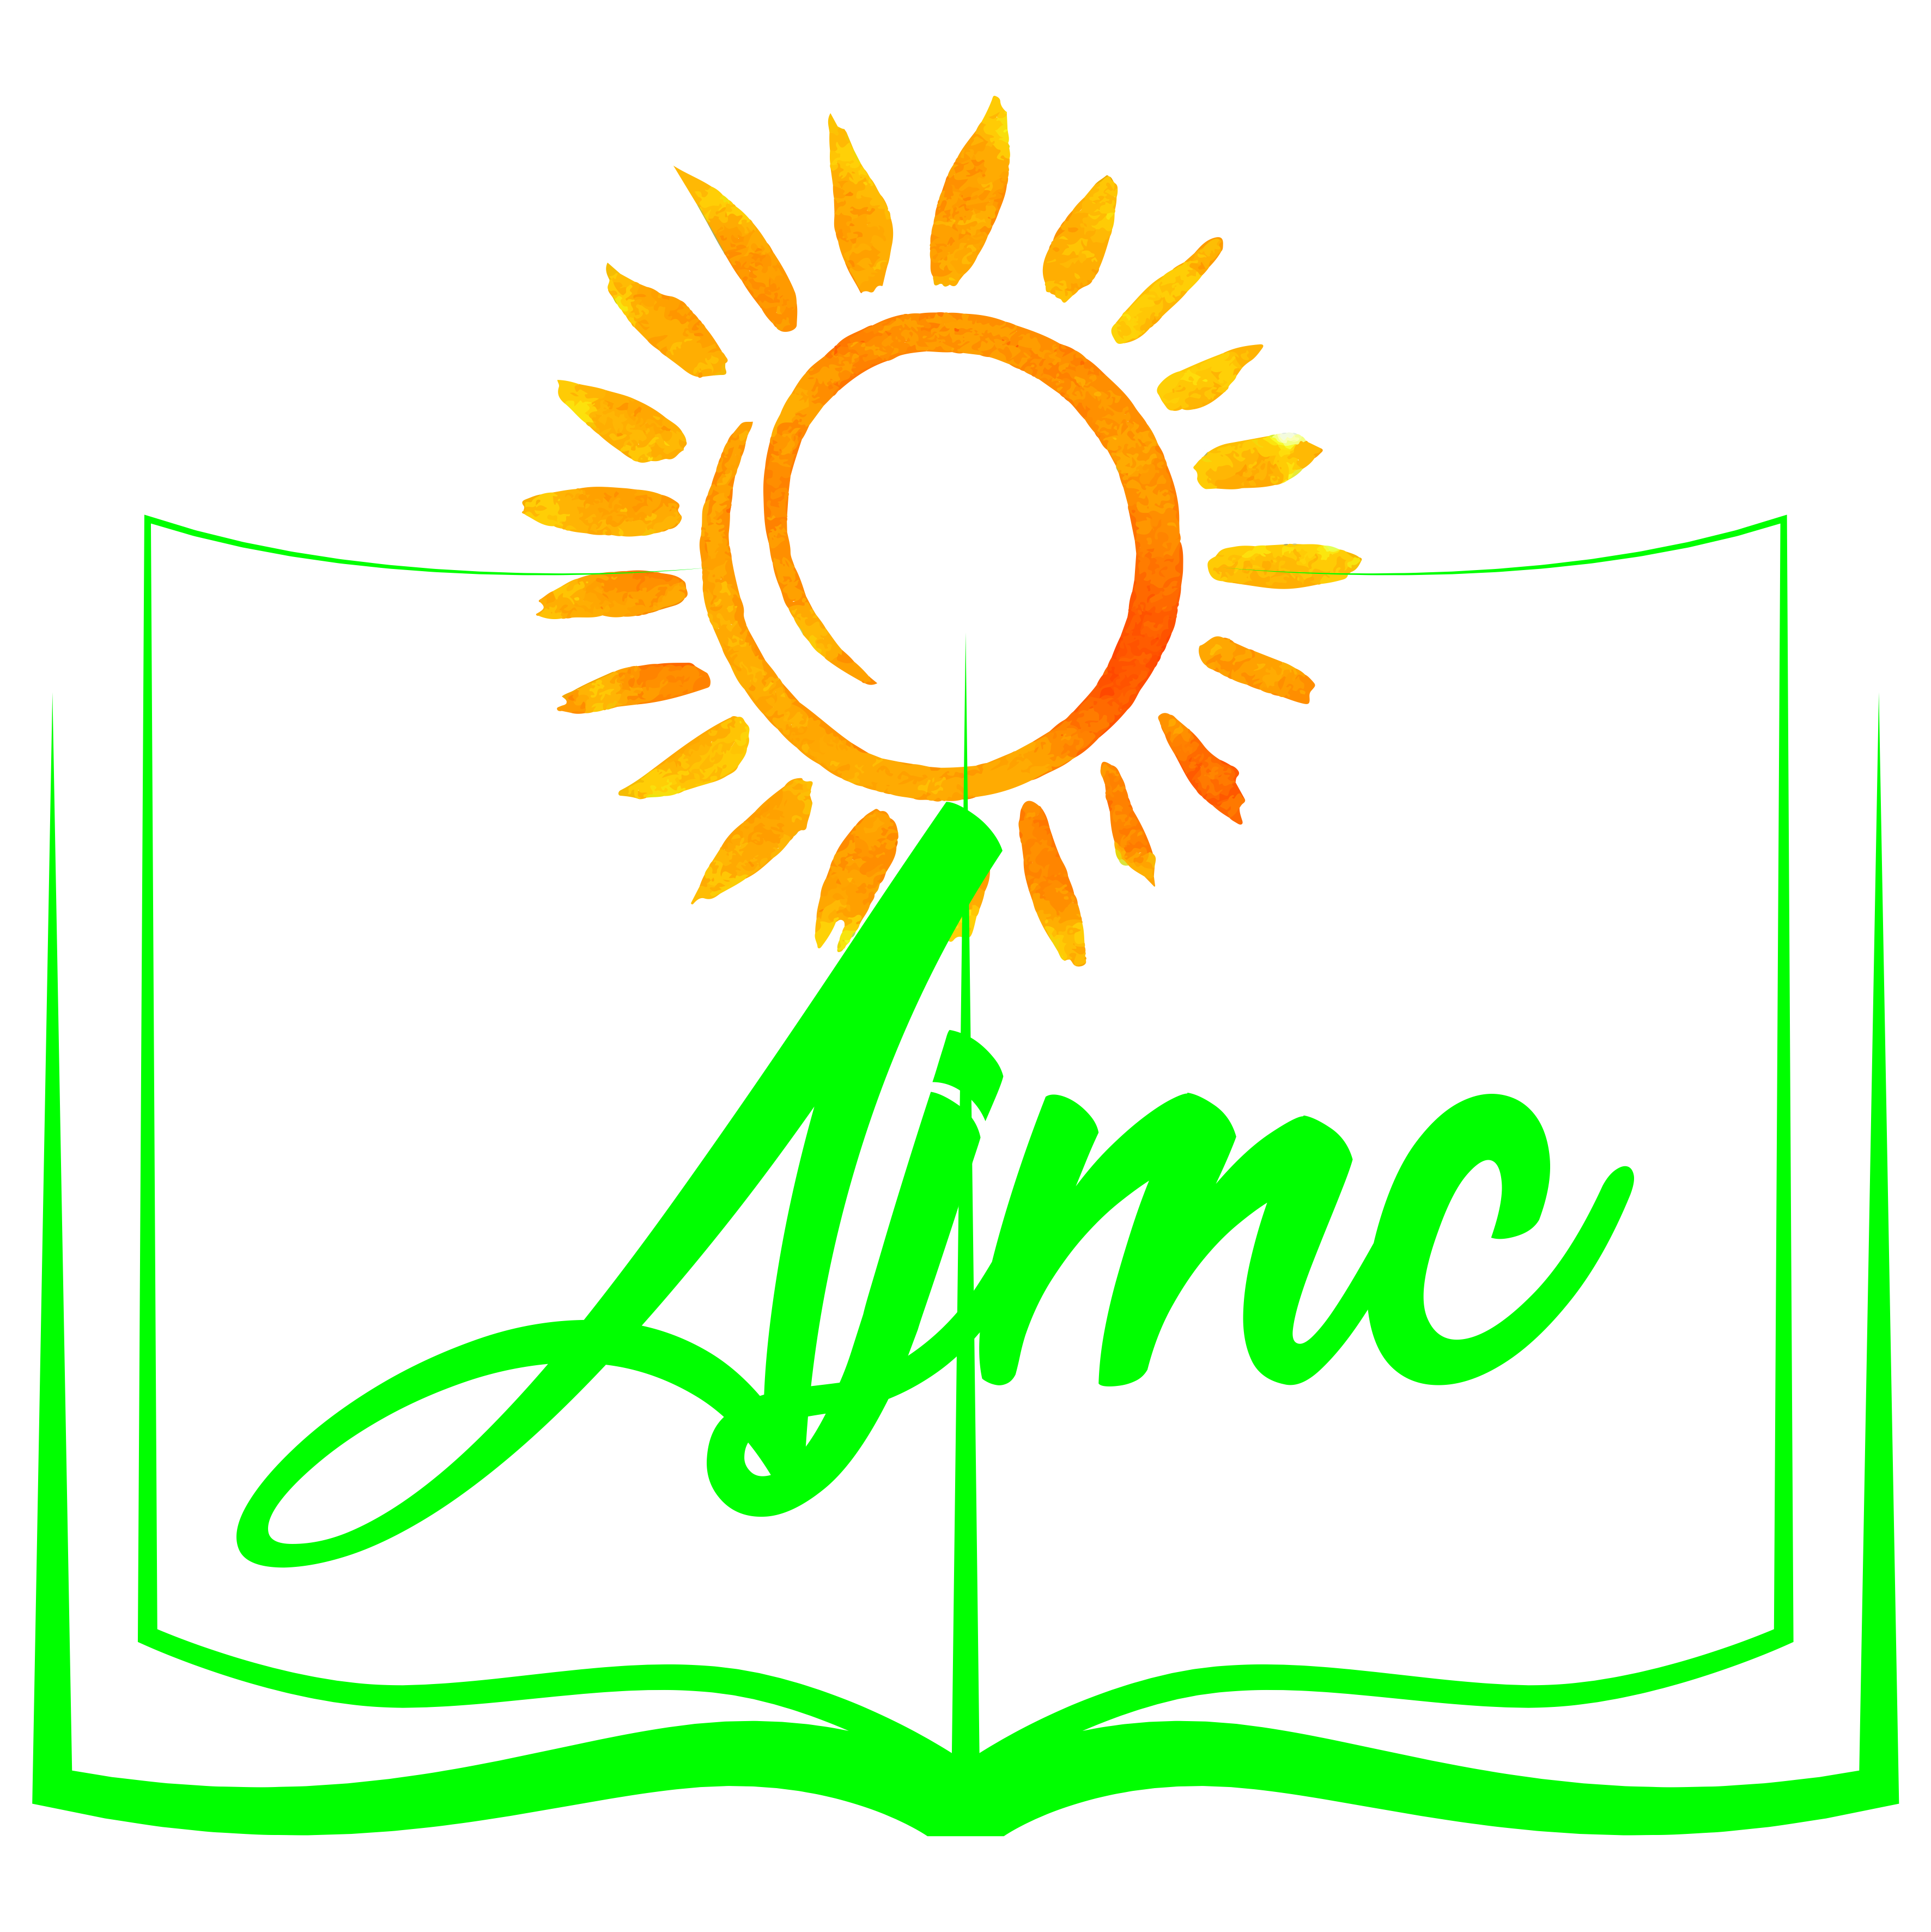 Logo Association Des Jeunes Musulmans Pour La Coexistence (AMJC)